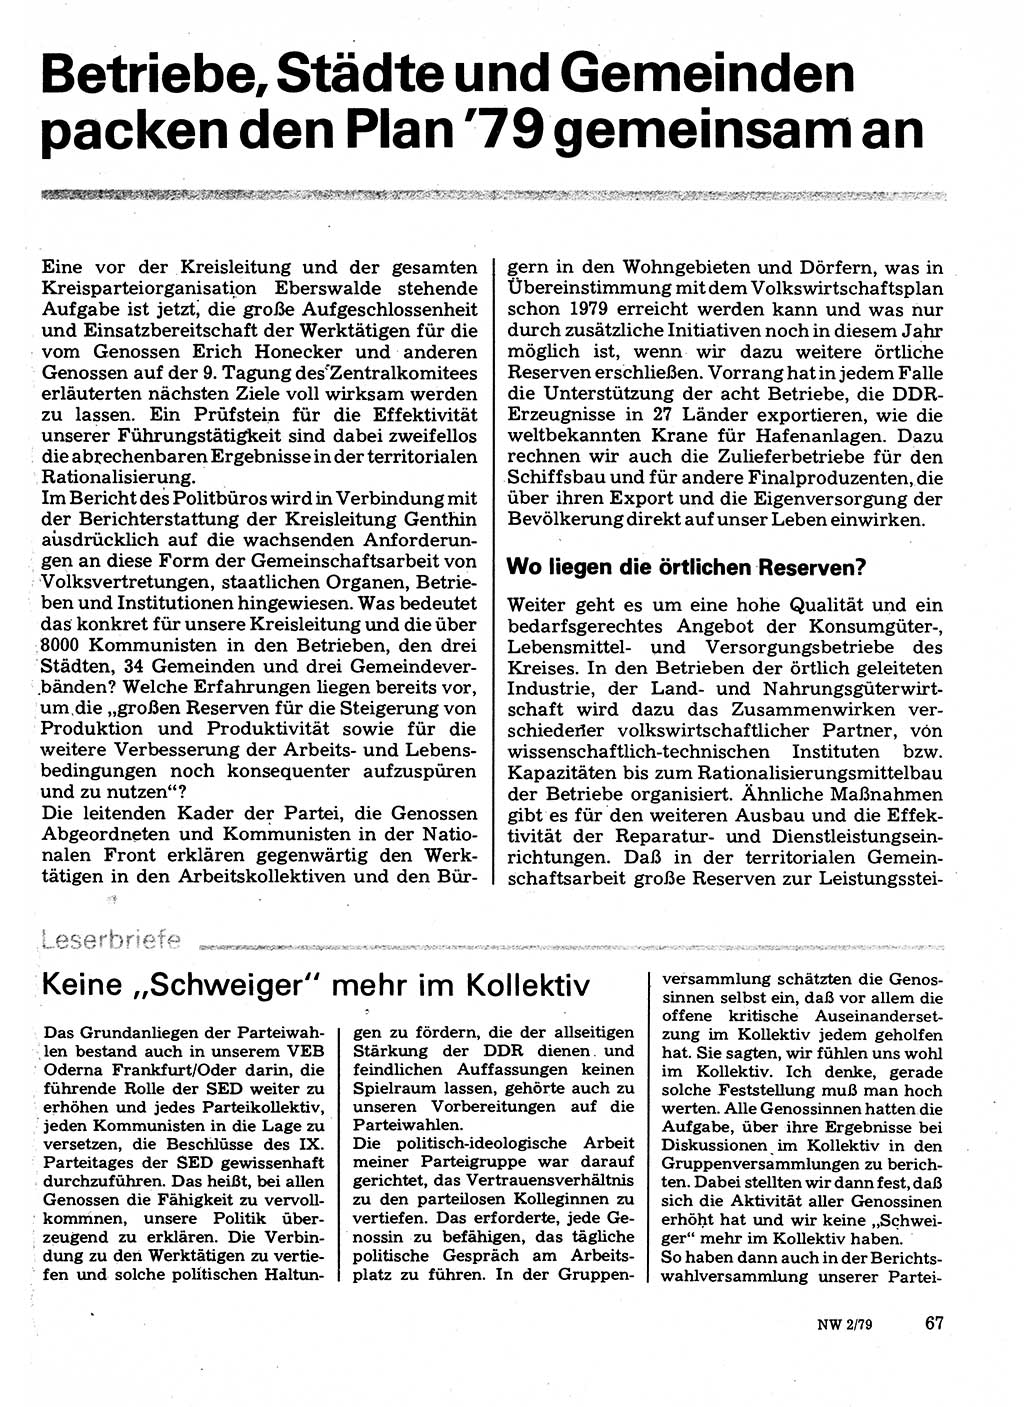 Neuer Weg (NW), Organ des Zentralkomitees (ZK) der SED (Sozialistische Einheitspartei Deutschlands) für Fragen des Parteilebens, 34. Jahrgang [Deutsche Demokratische Republik (DDR)] 1979, Seite 67 (NW ZK SED DDR 1979, S. 67)